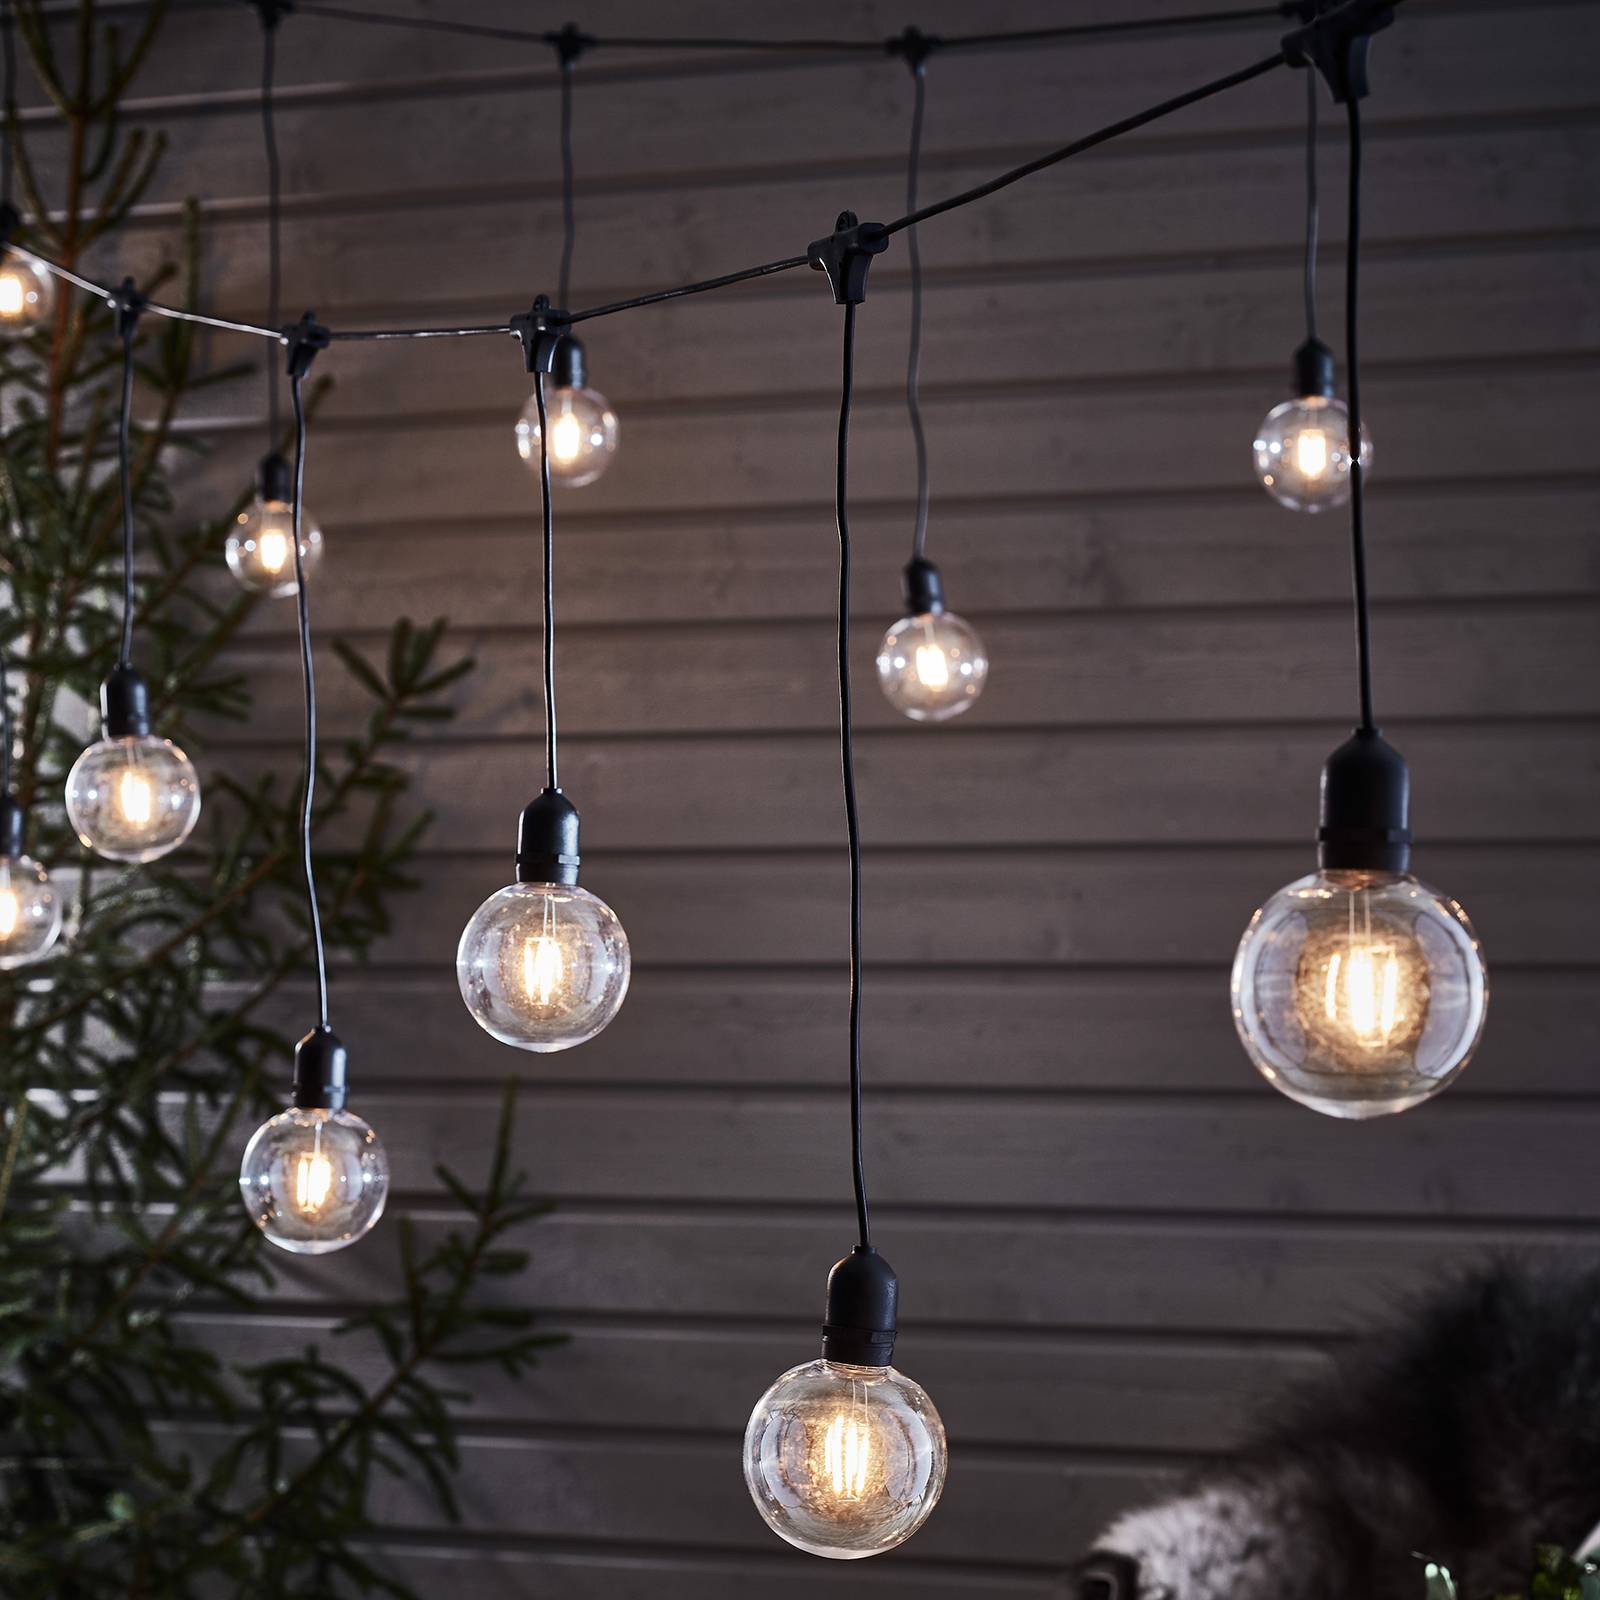 Markslöjd Garden 24 LED světelný řetěz Deco Extra, rozšíření